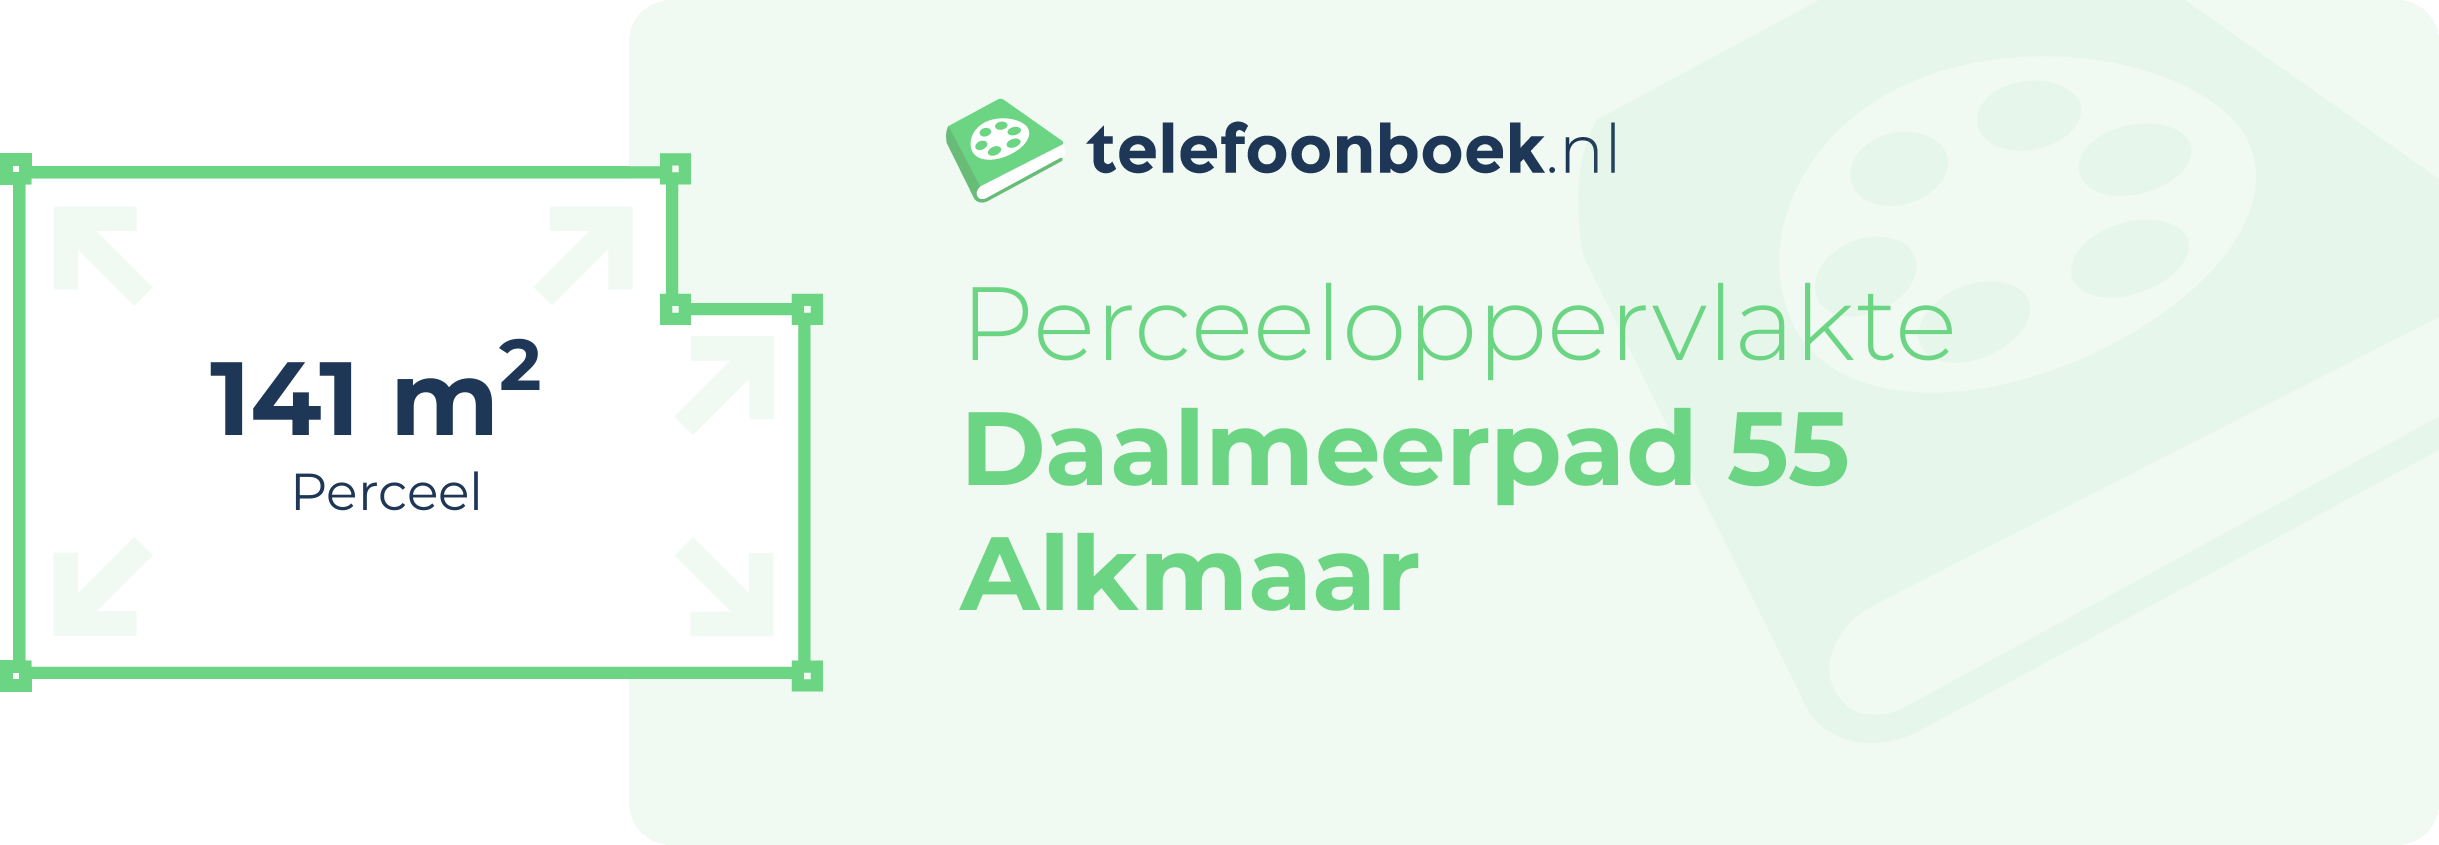 Perceeloppervlakte Daalmeerpad 55 Alkmaar